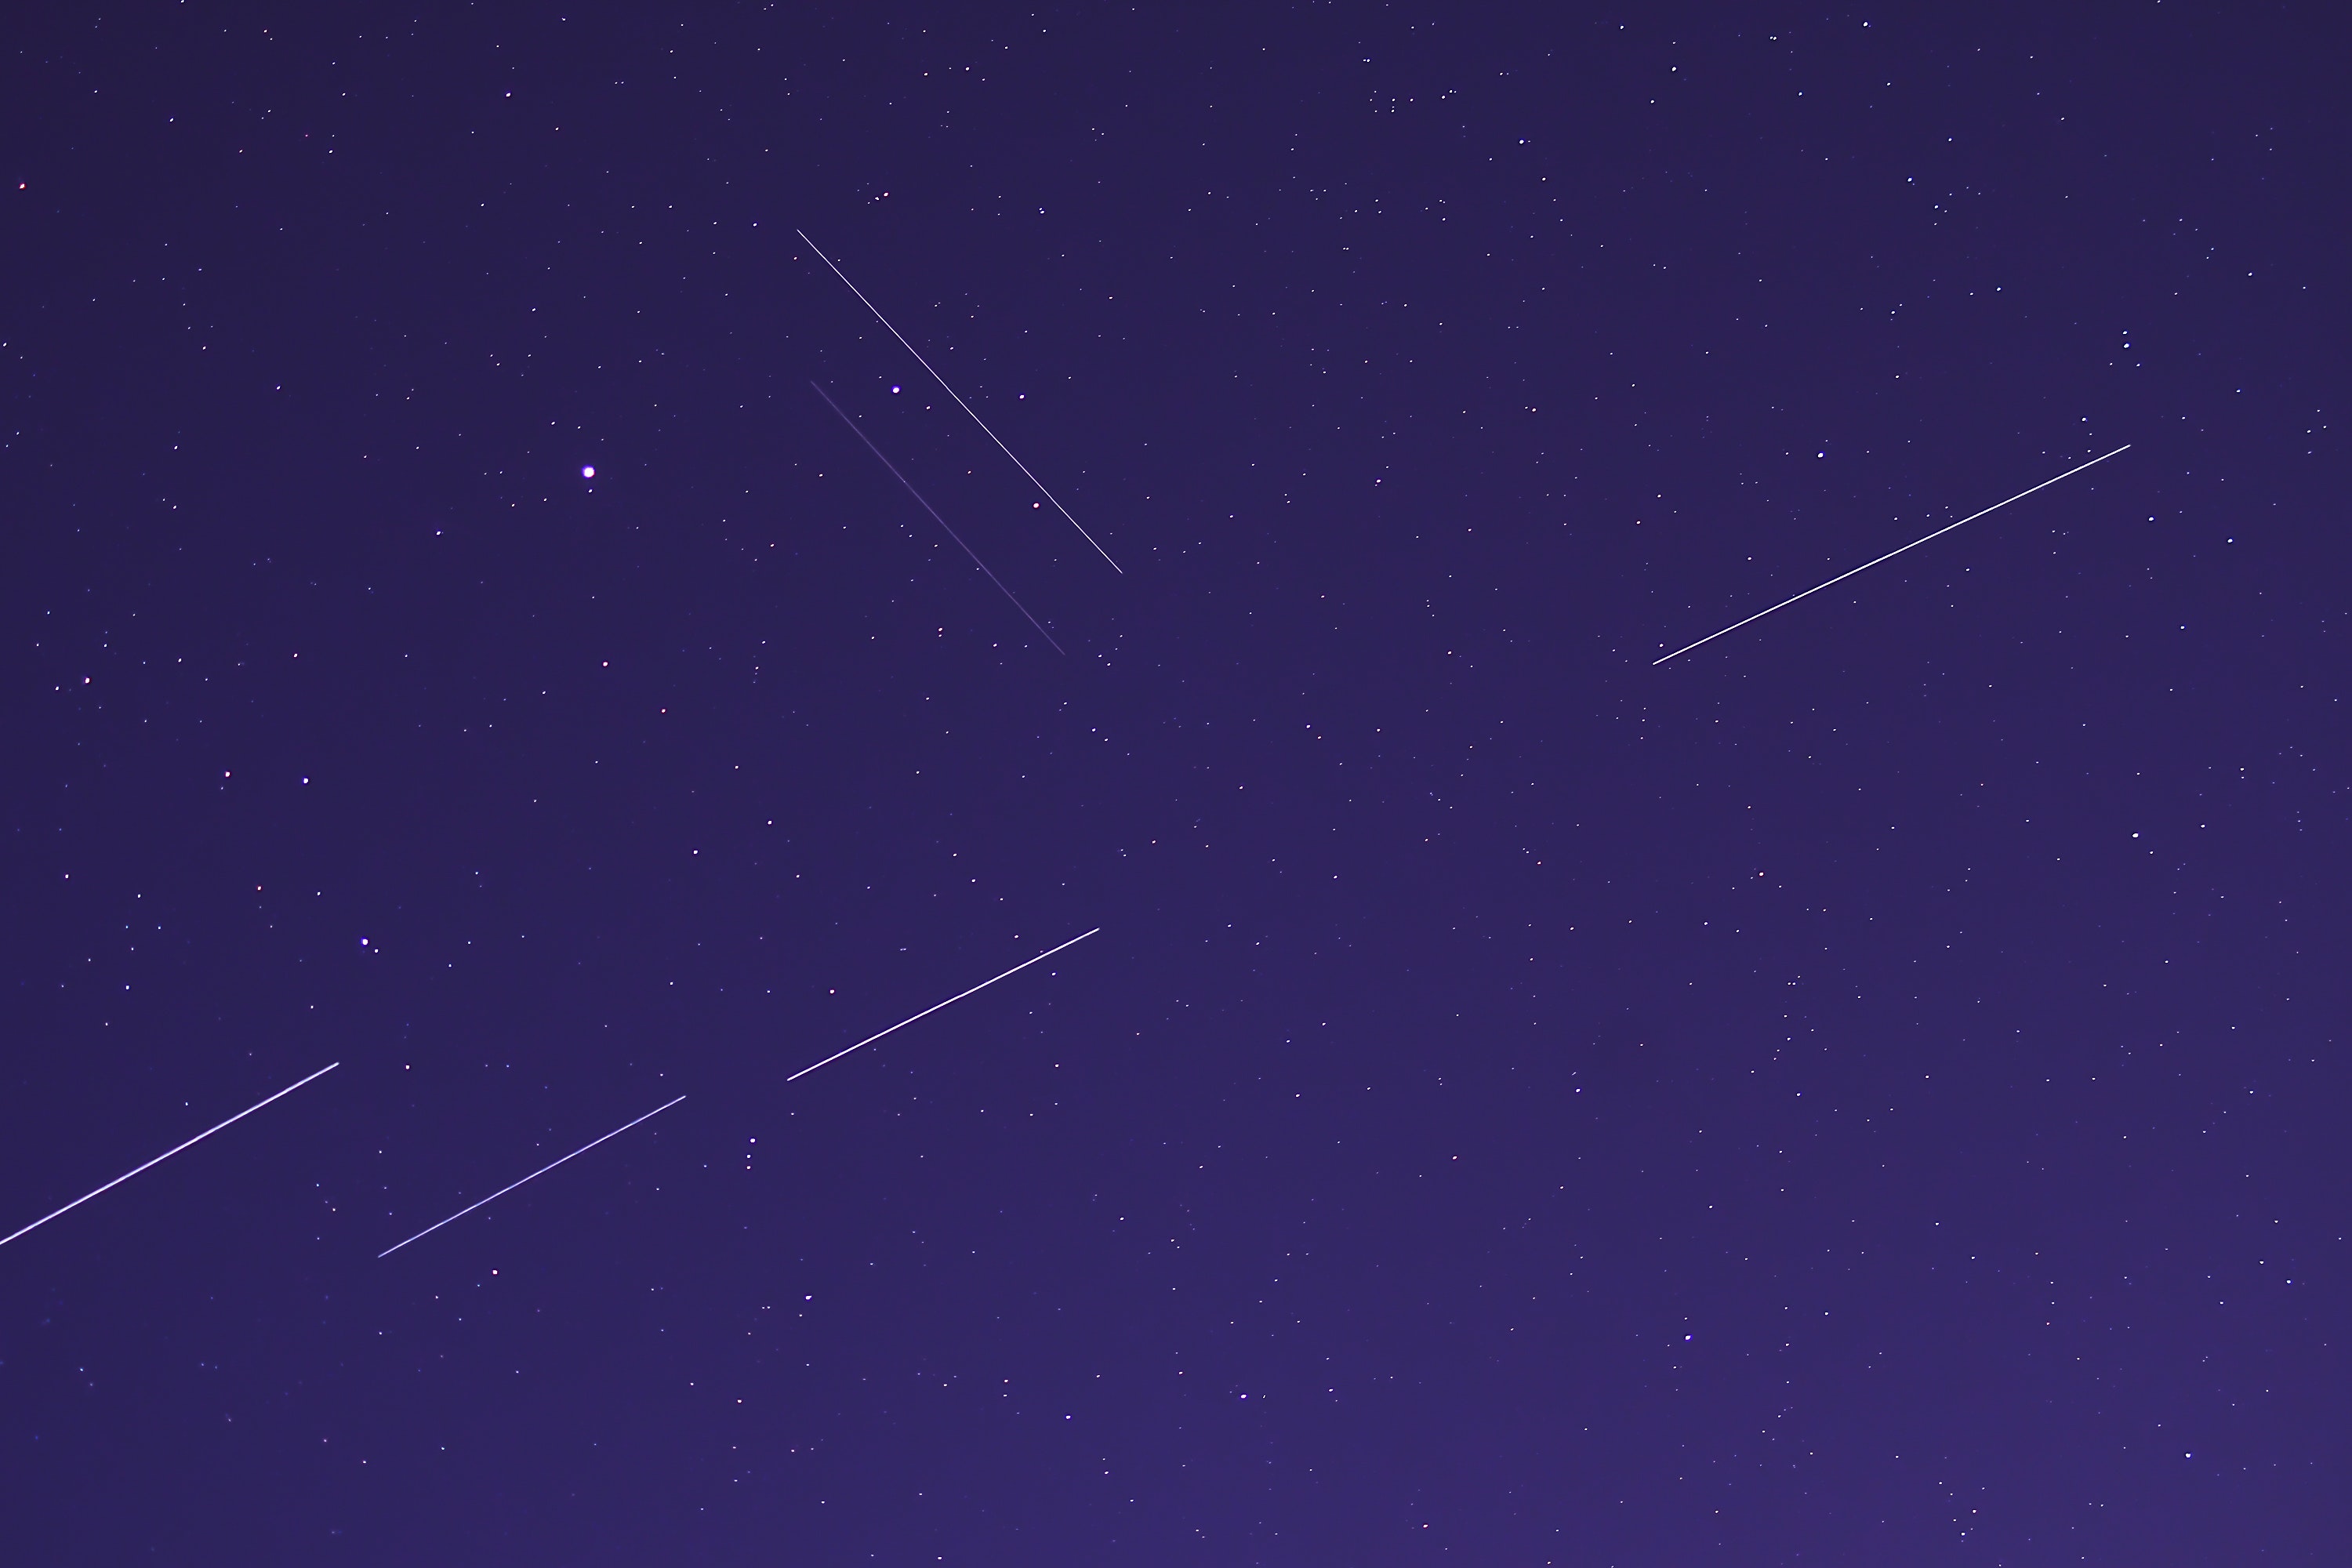 Satellites leaving streaks in the night sky.